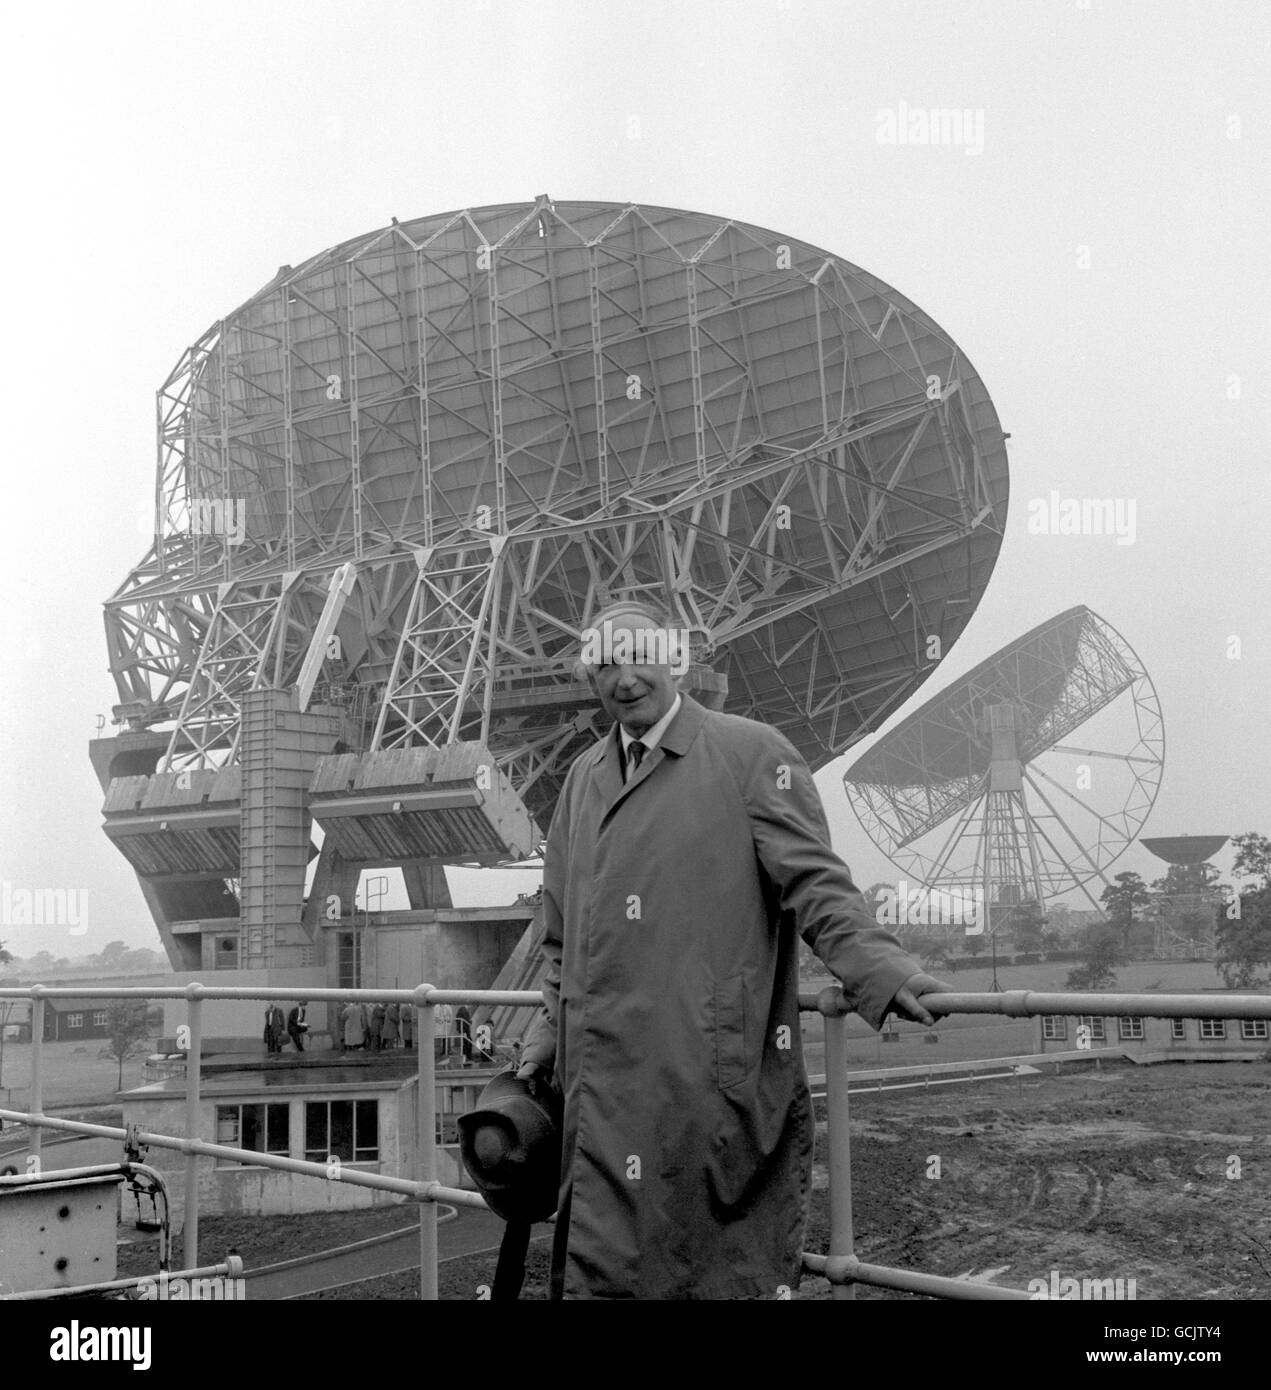 Sir Bernard Lovell, direttore della stazione di Astronomia radiofonica Jodrell Bank, Cheshire, ha illustrato oggi (giovedì) di fronte alle stazioni nuovo radiotelescopio da £300,000, il primo strumento controllato da computer del suo genere, e sullo sfondo è il telescopio Mk1 di Jodrell Bank. Foto Stock